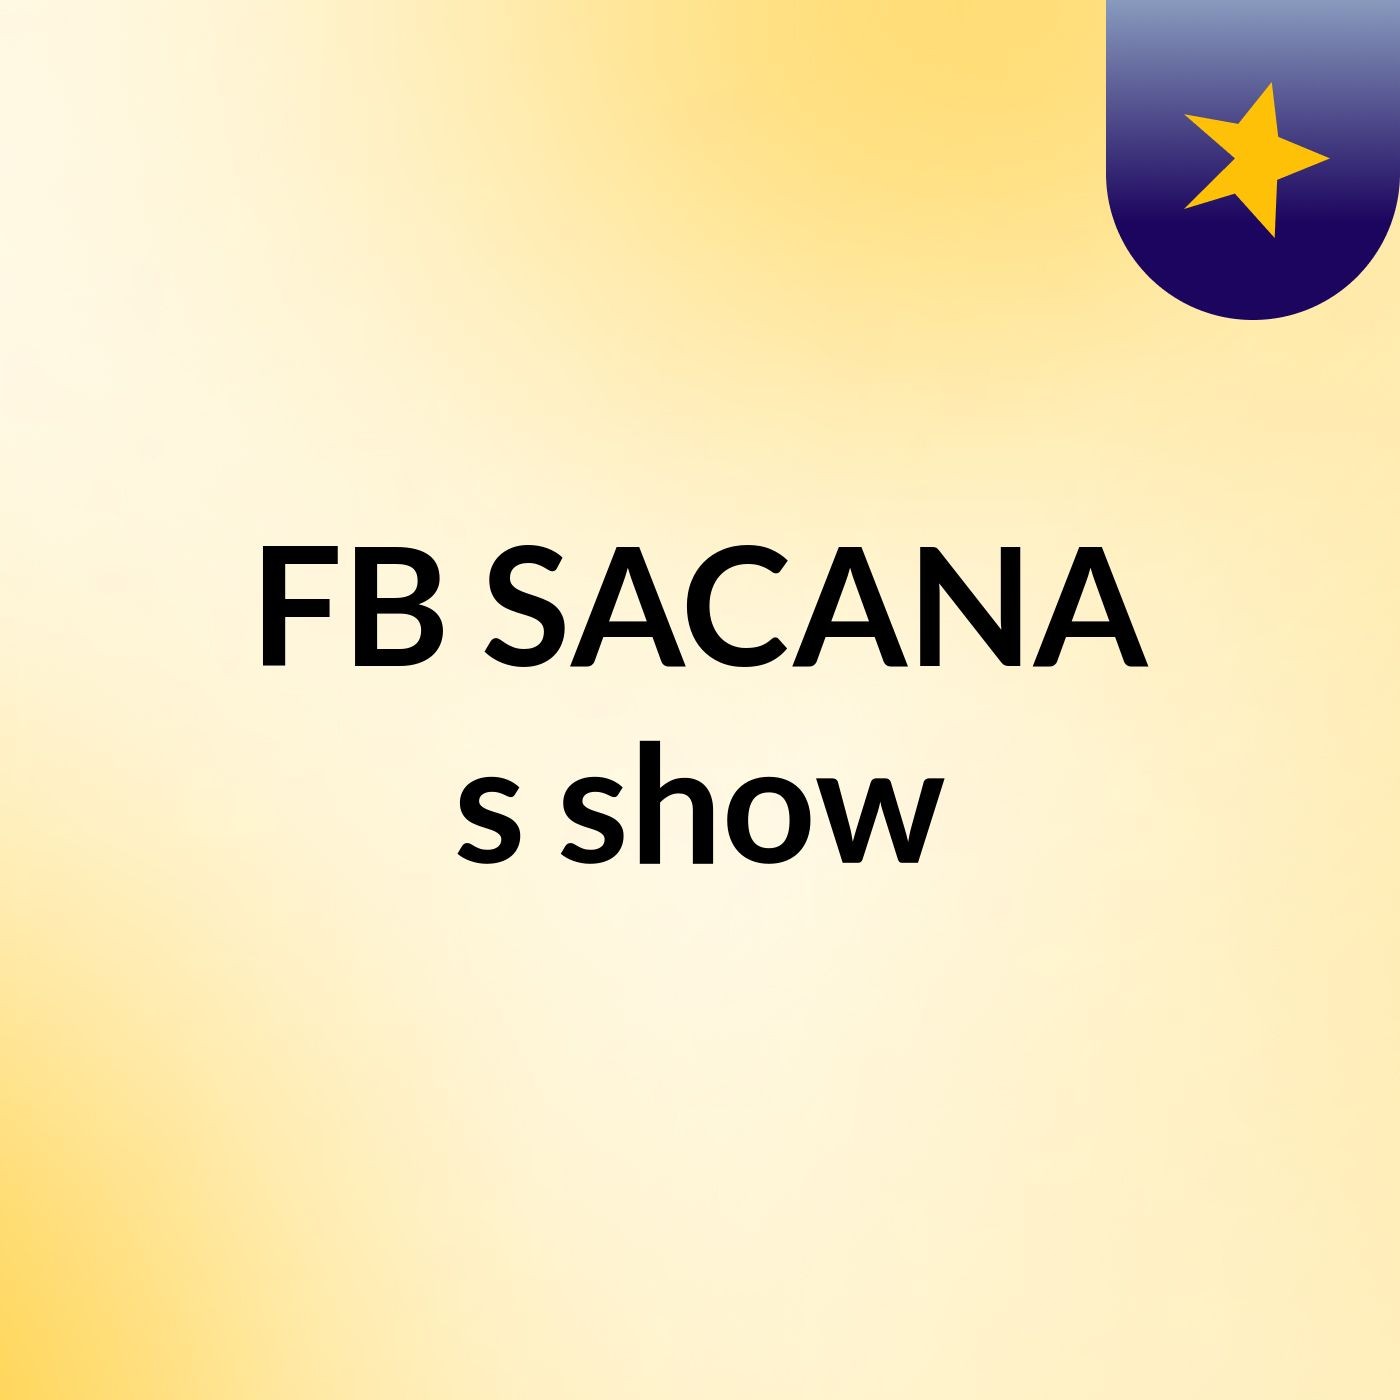 FB SACANA's show